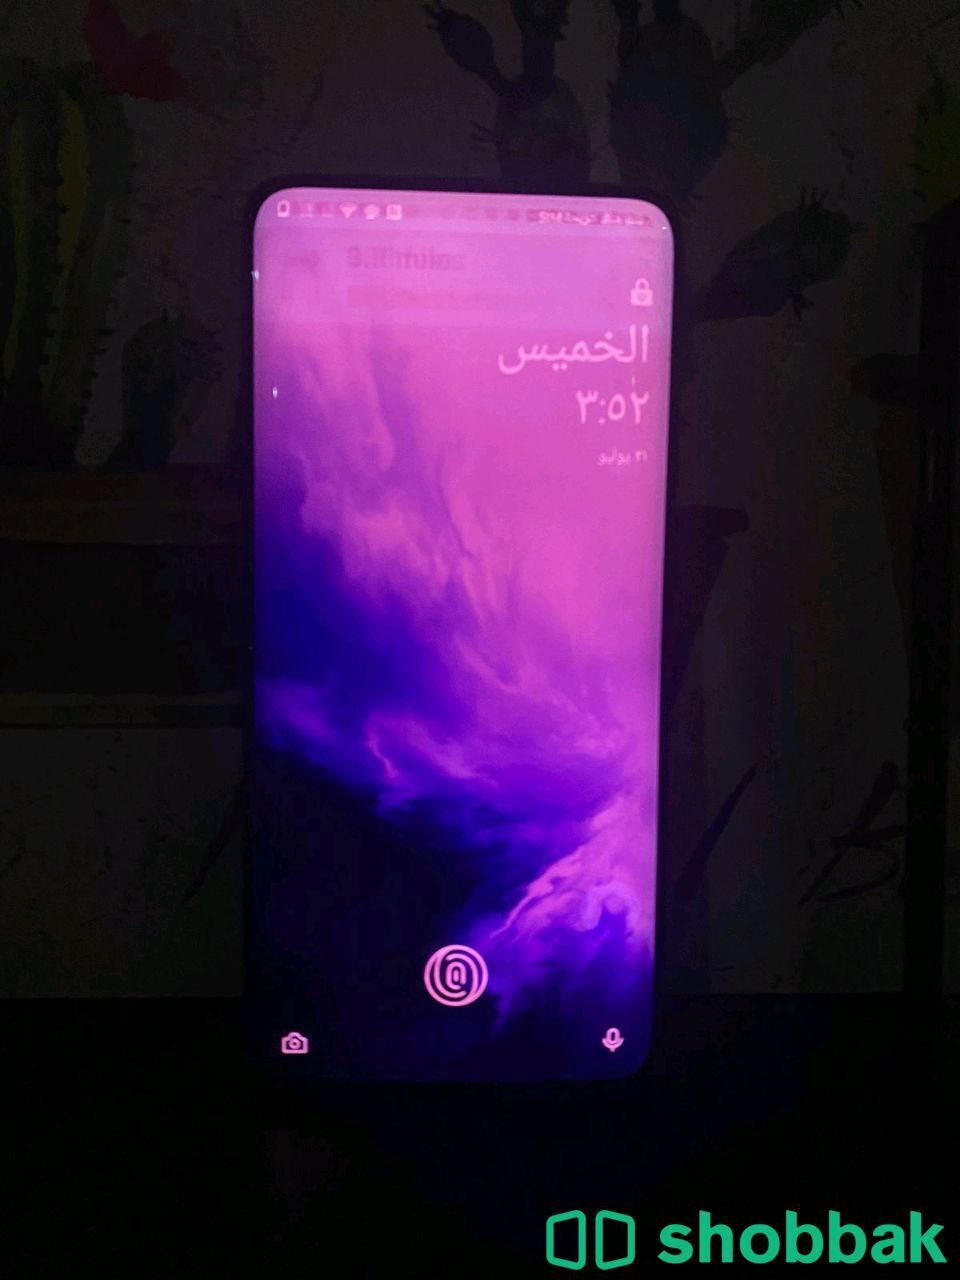 OnePlus 7Pro Shobbak Saudi Arabia